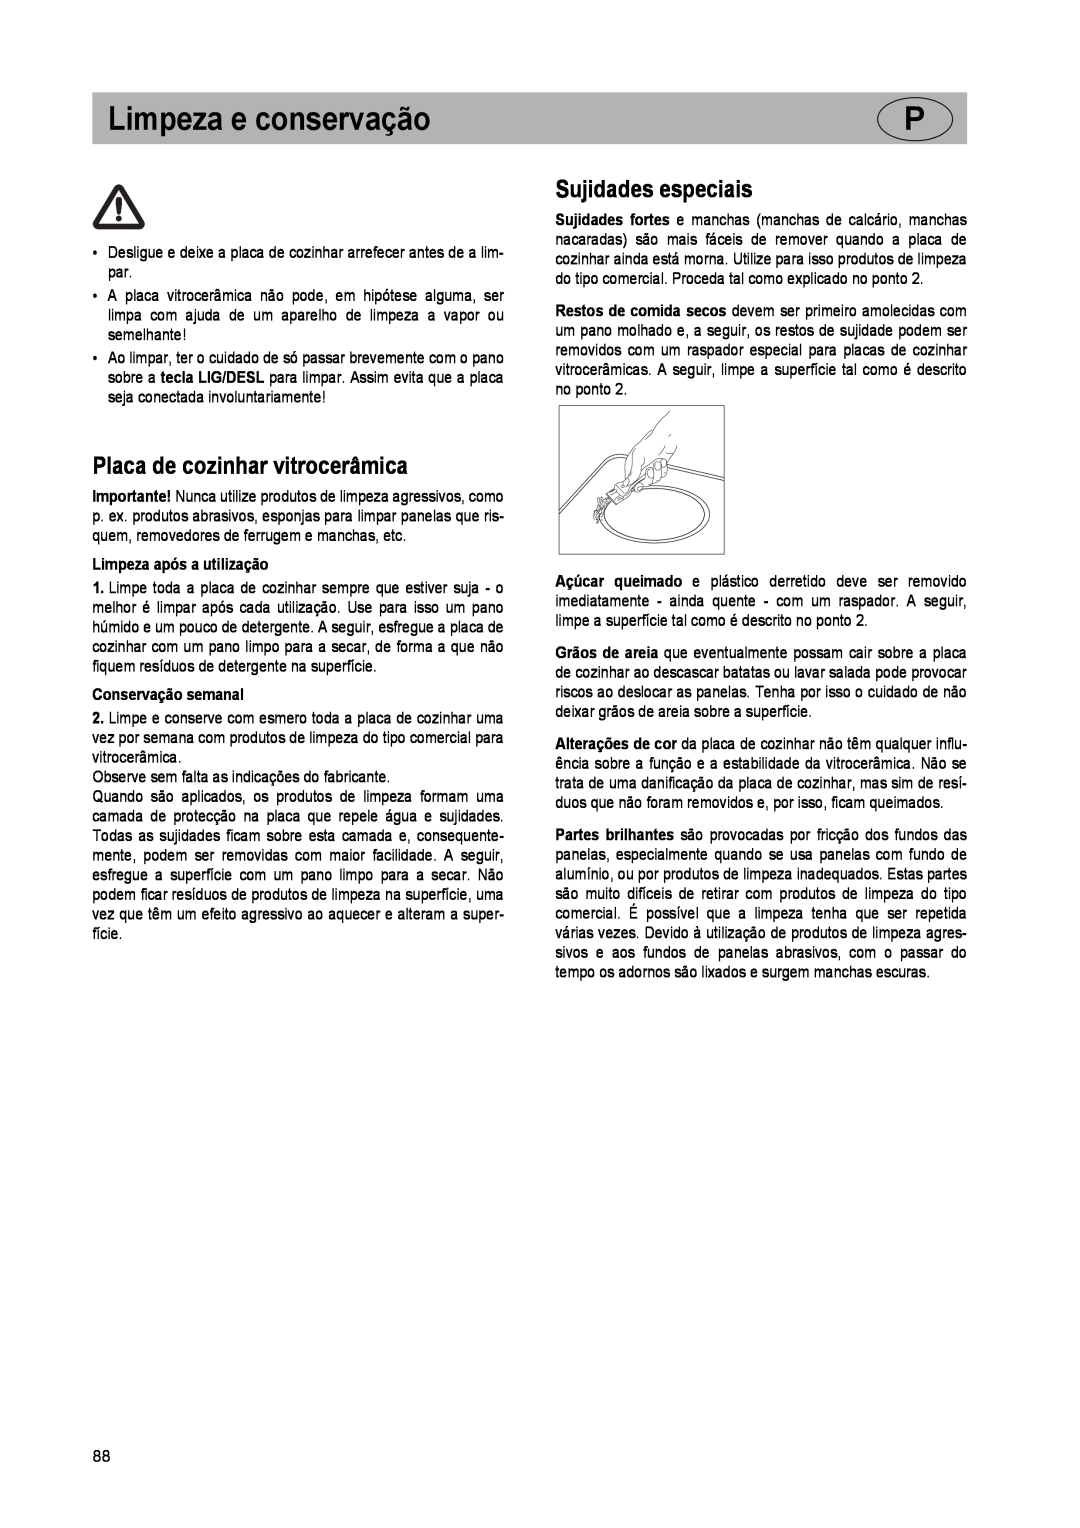 Smeg SE640ID manual Limpeza e conservação, Sujidades especiais, Placa de cozinhar vitrocerâmica, Limpeza após a utilização 